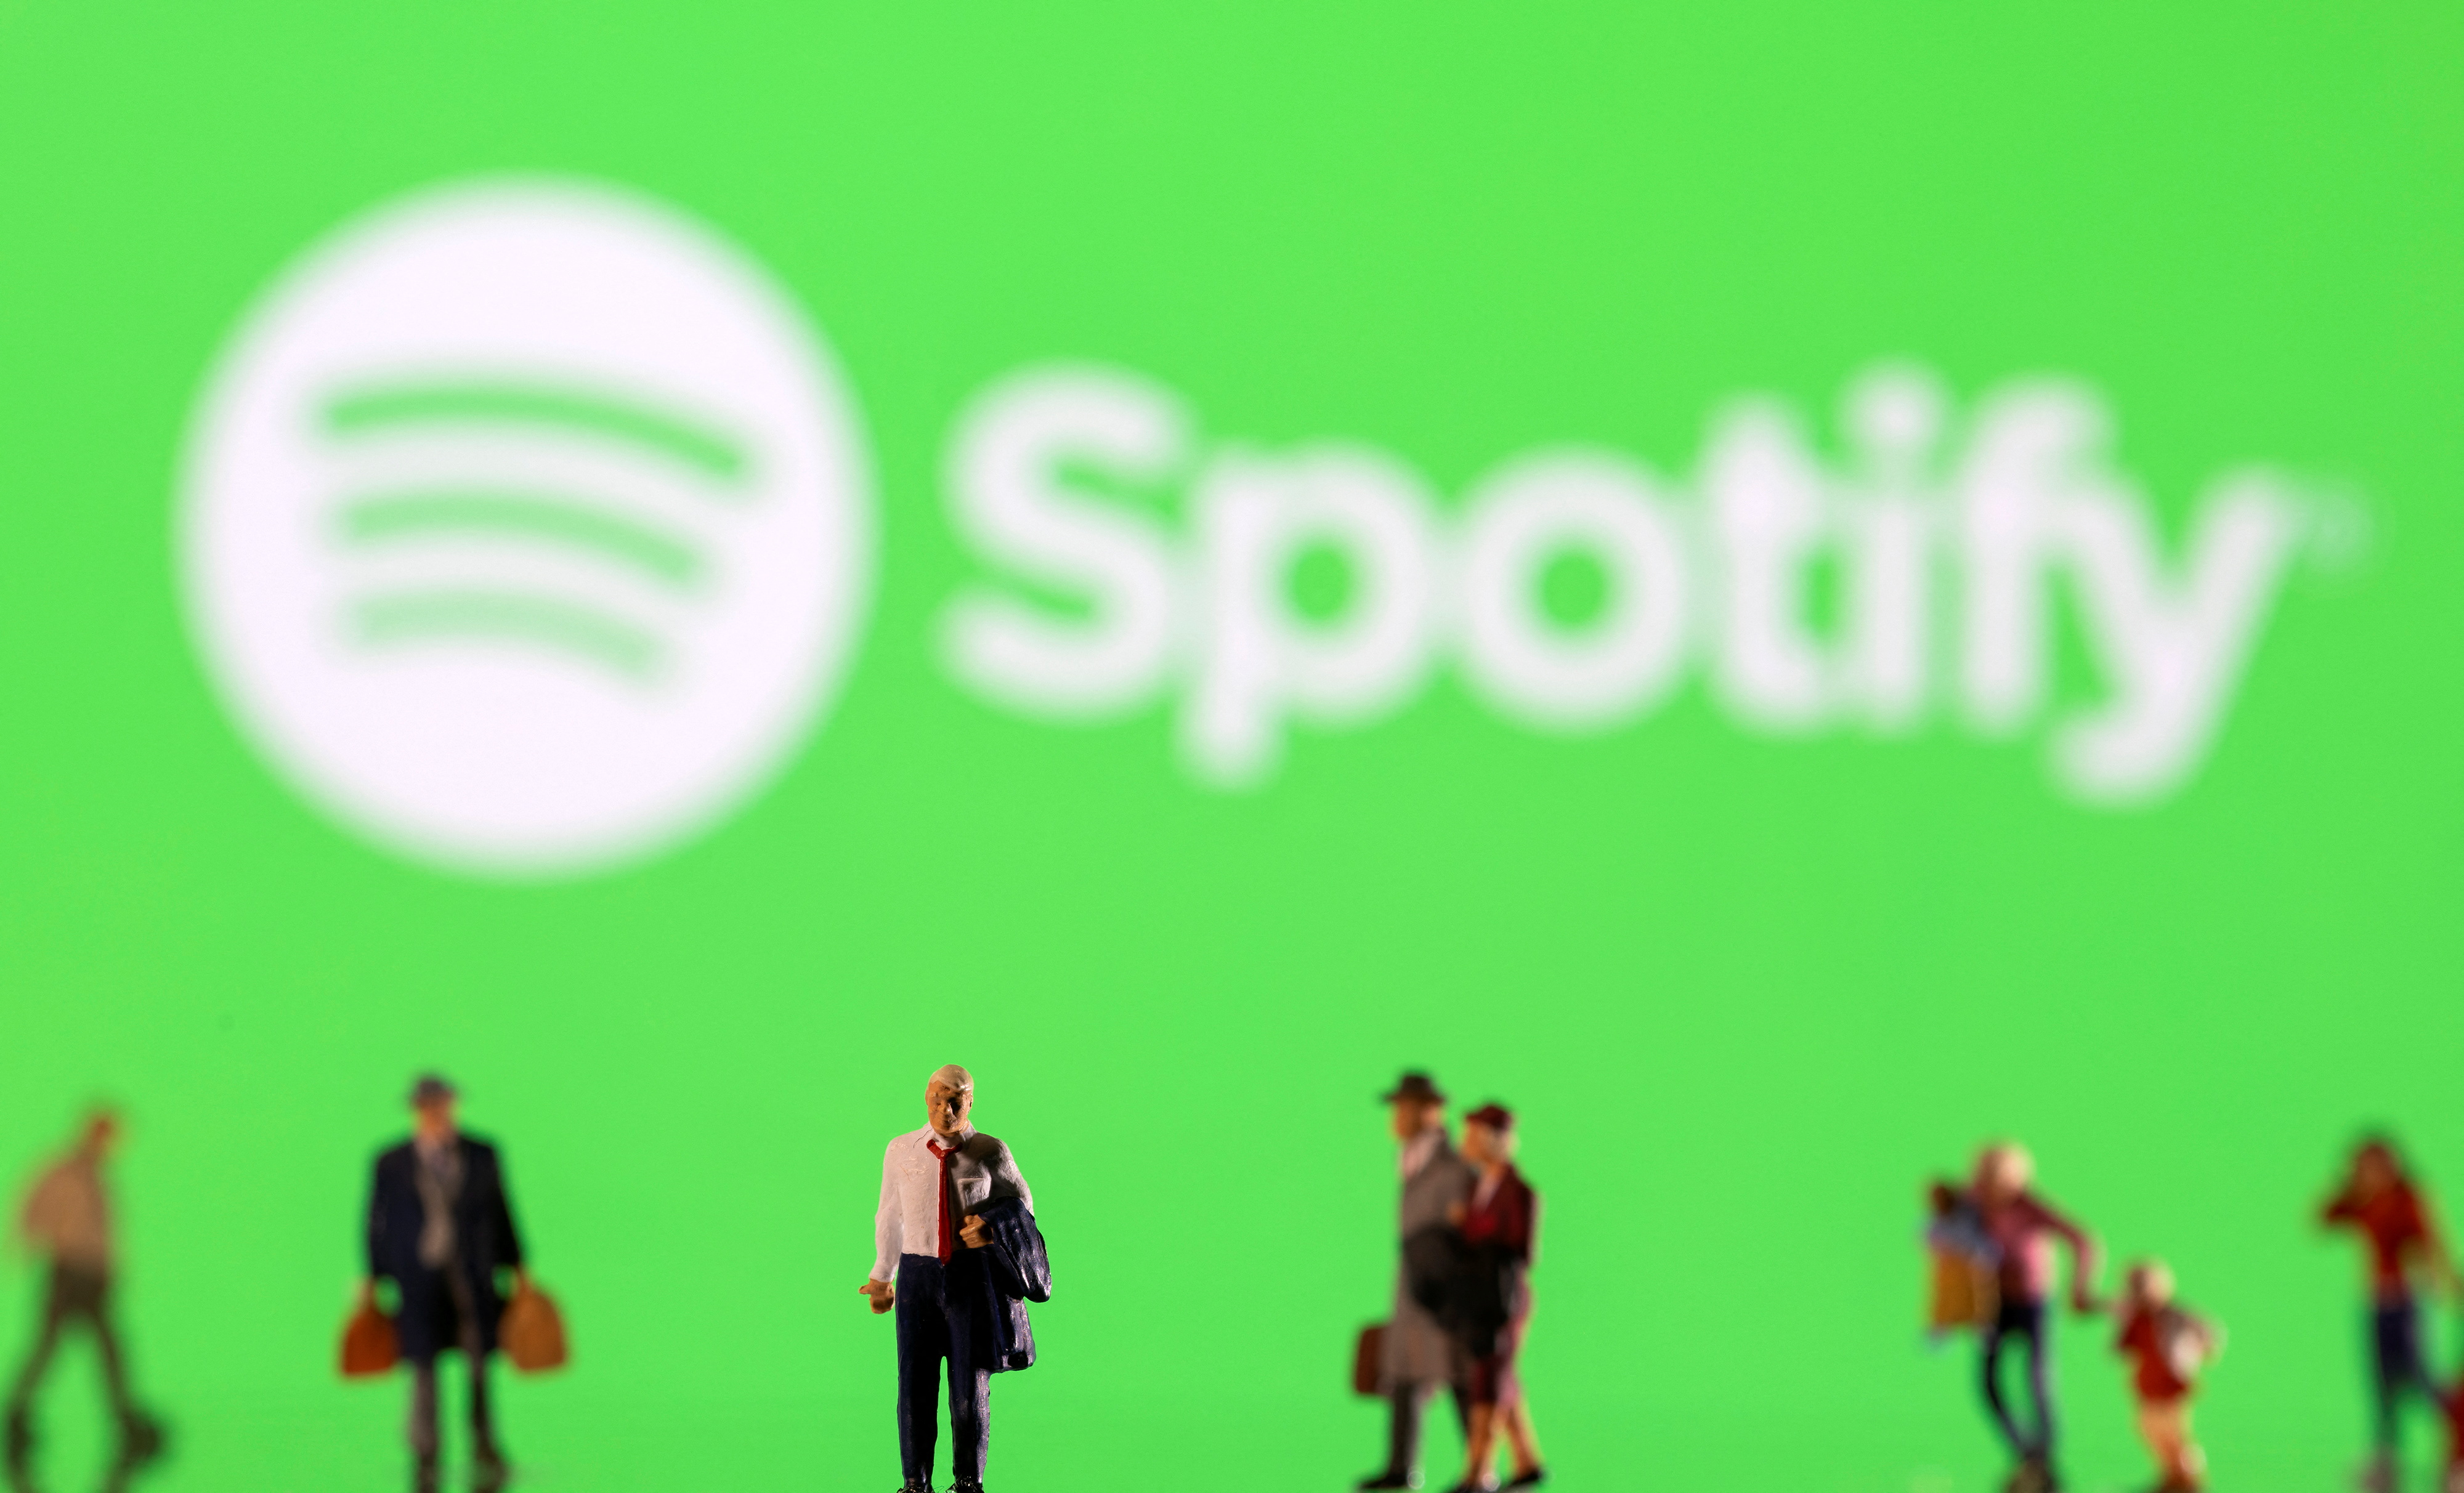 Millones de usuarios usan Spotify en el mundo (Foto: REUTERS/Dado Ruvic/Ilustration)